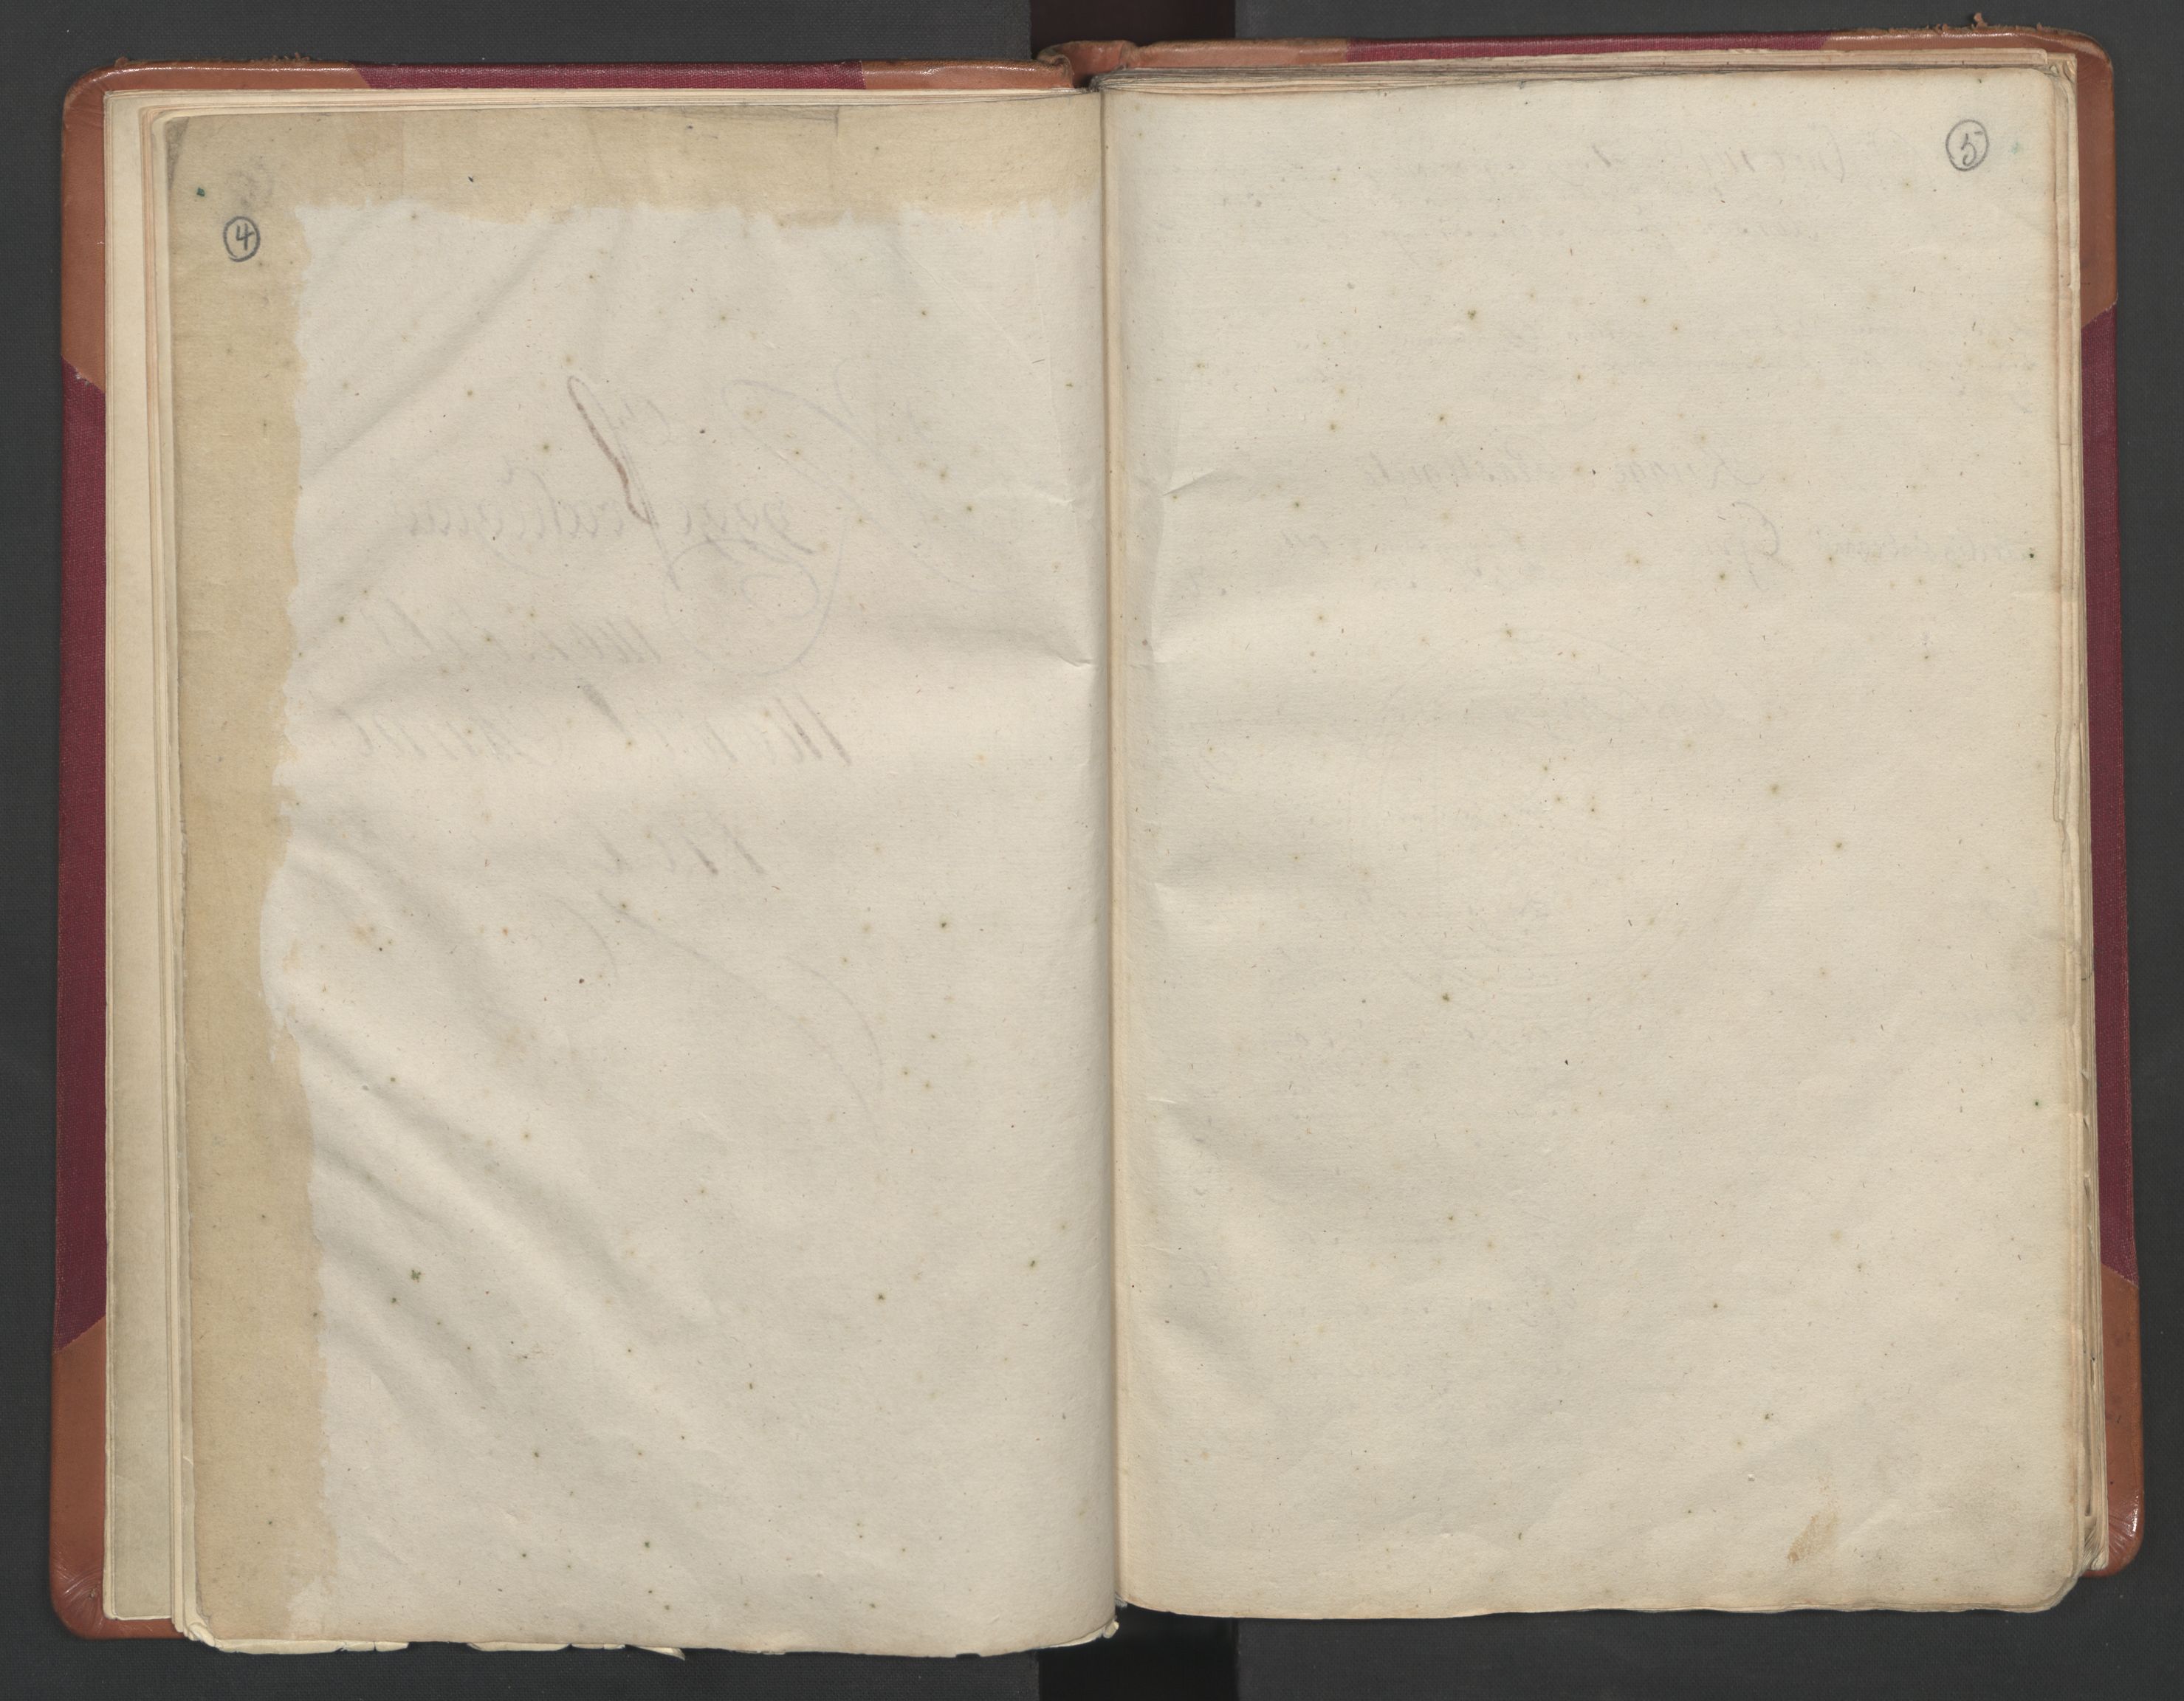 RA, Manntallet 1701, nr. 1: Moss, Onsøy, Tune og Veme fogderi og Nedre Romerike fogderi, 1701, s. 4-5